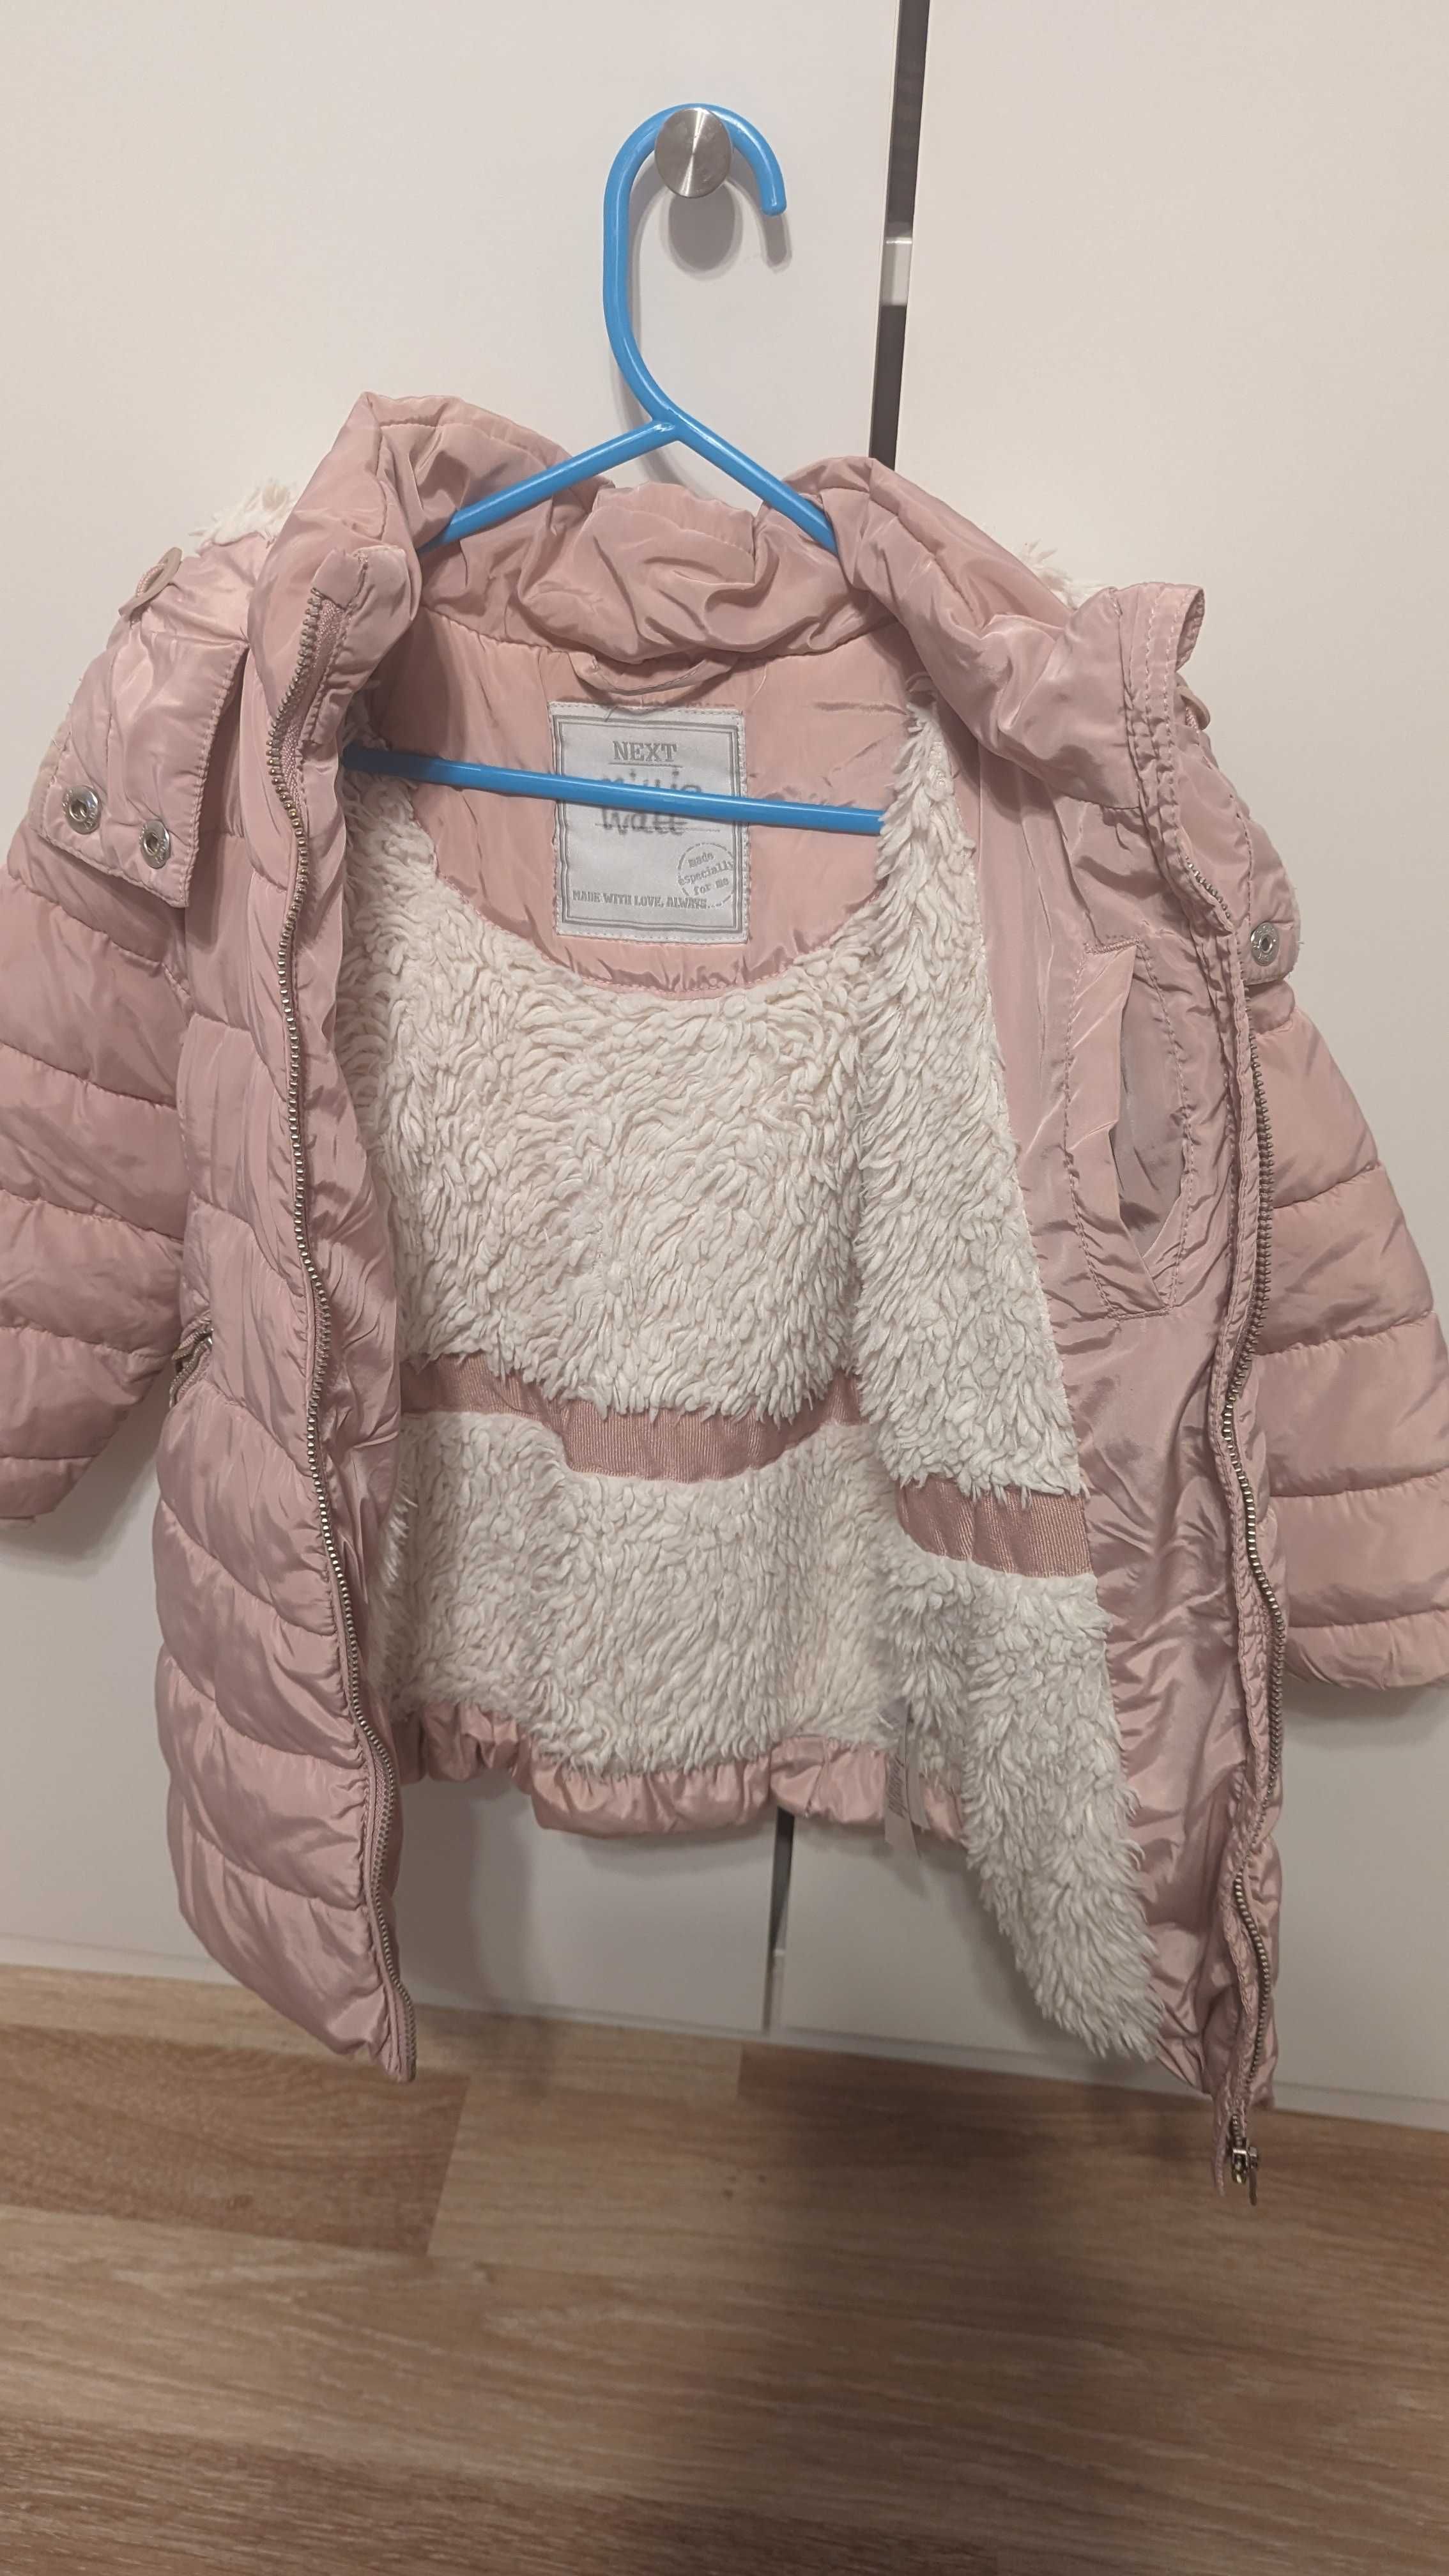 cieplejsza kurtka zimowa z firmy Next dla dziewczynki